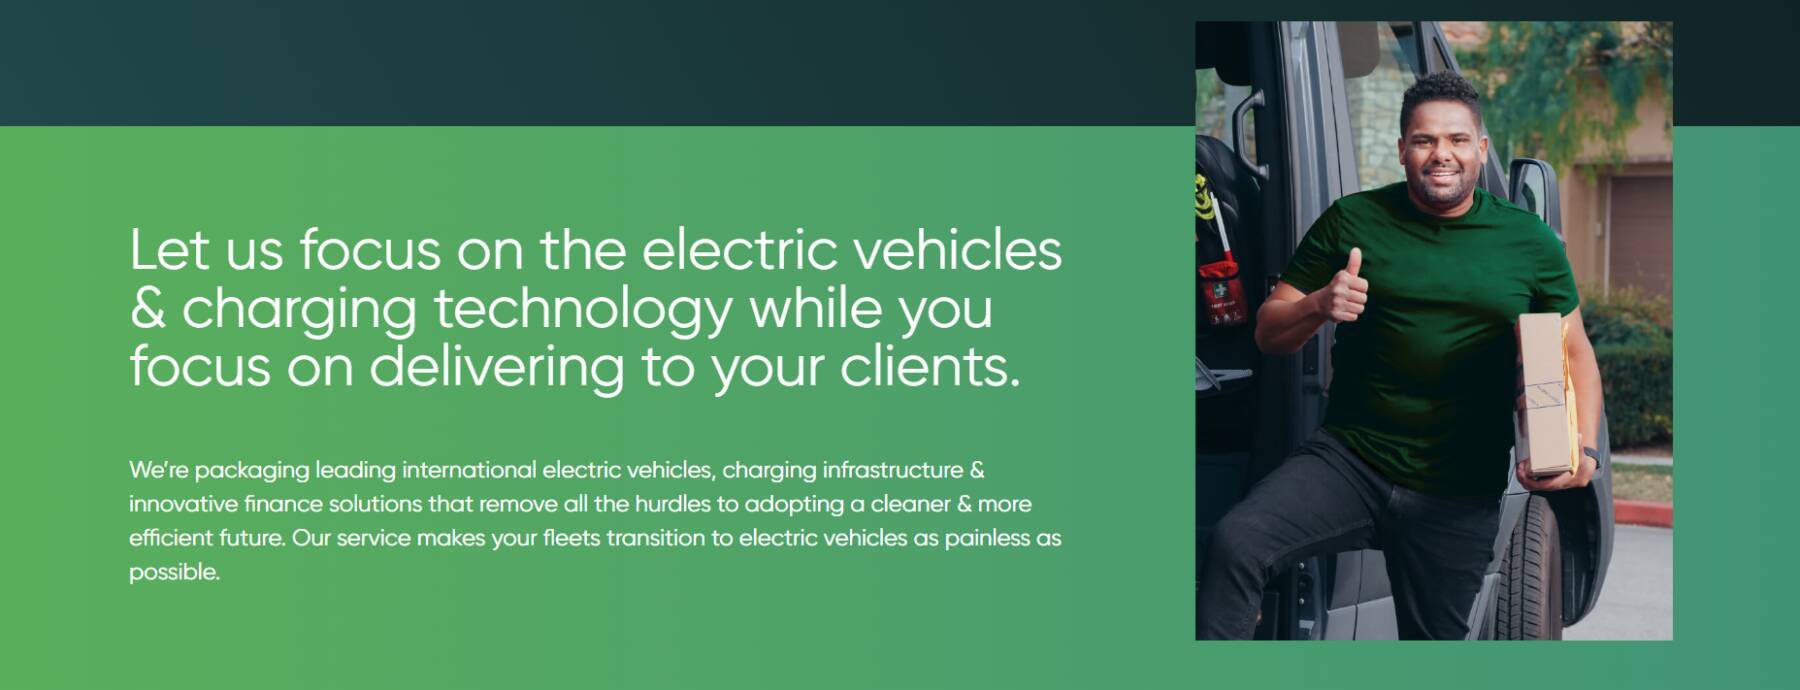 南アEverlectric、車両から充電インフラまで包括した“EV導入ソリューション”提供